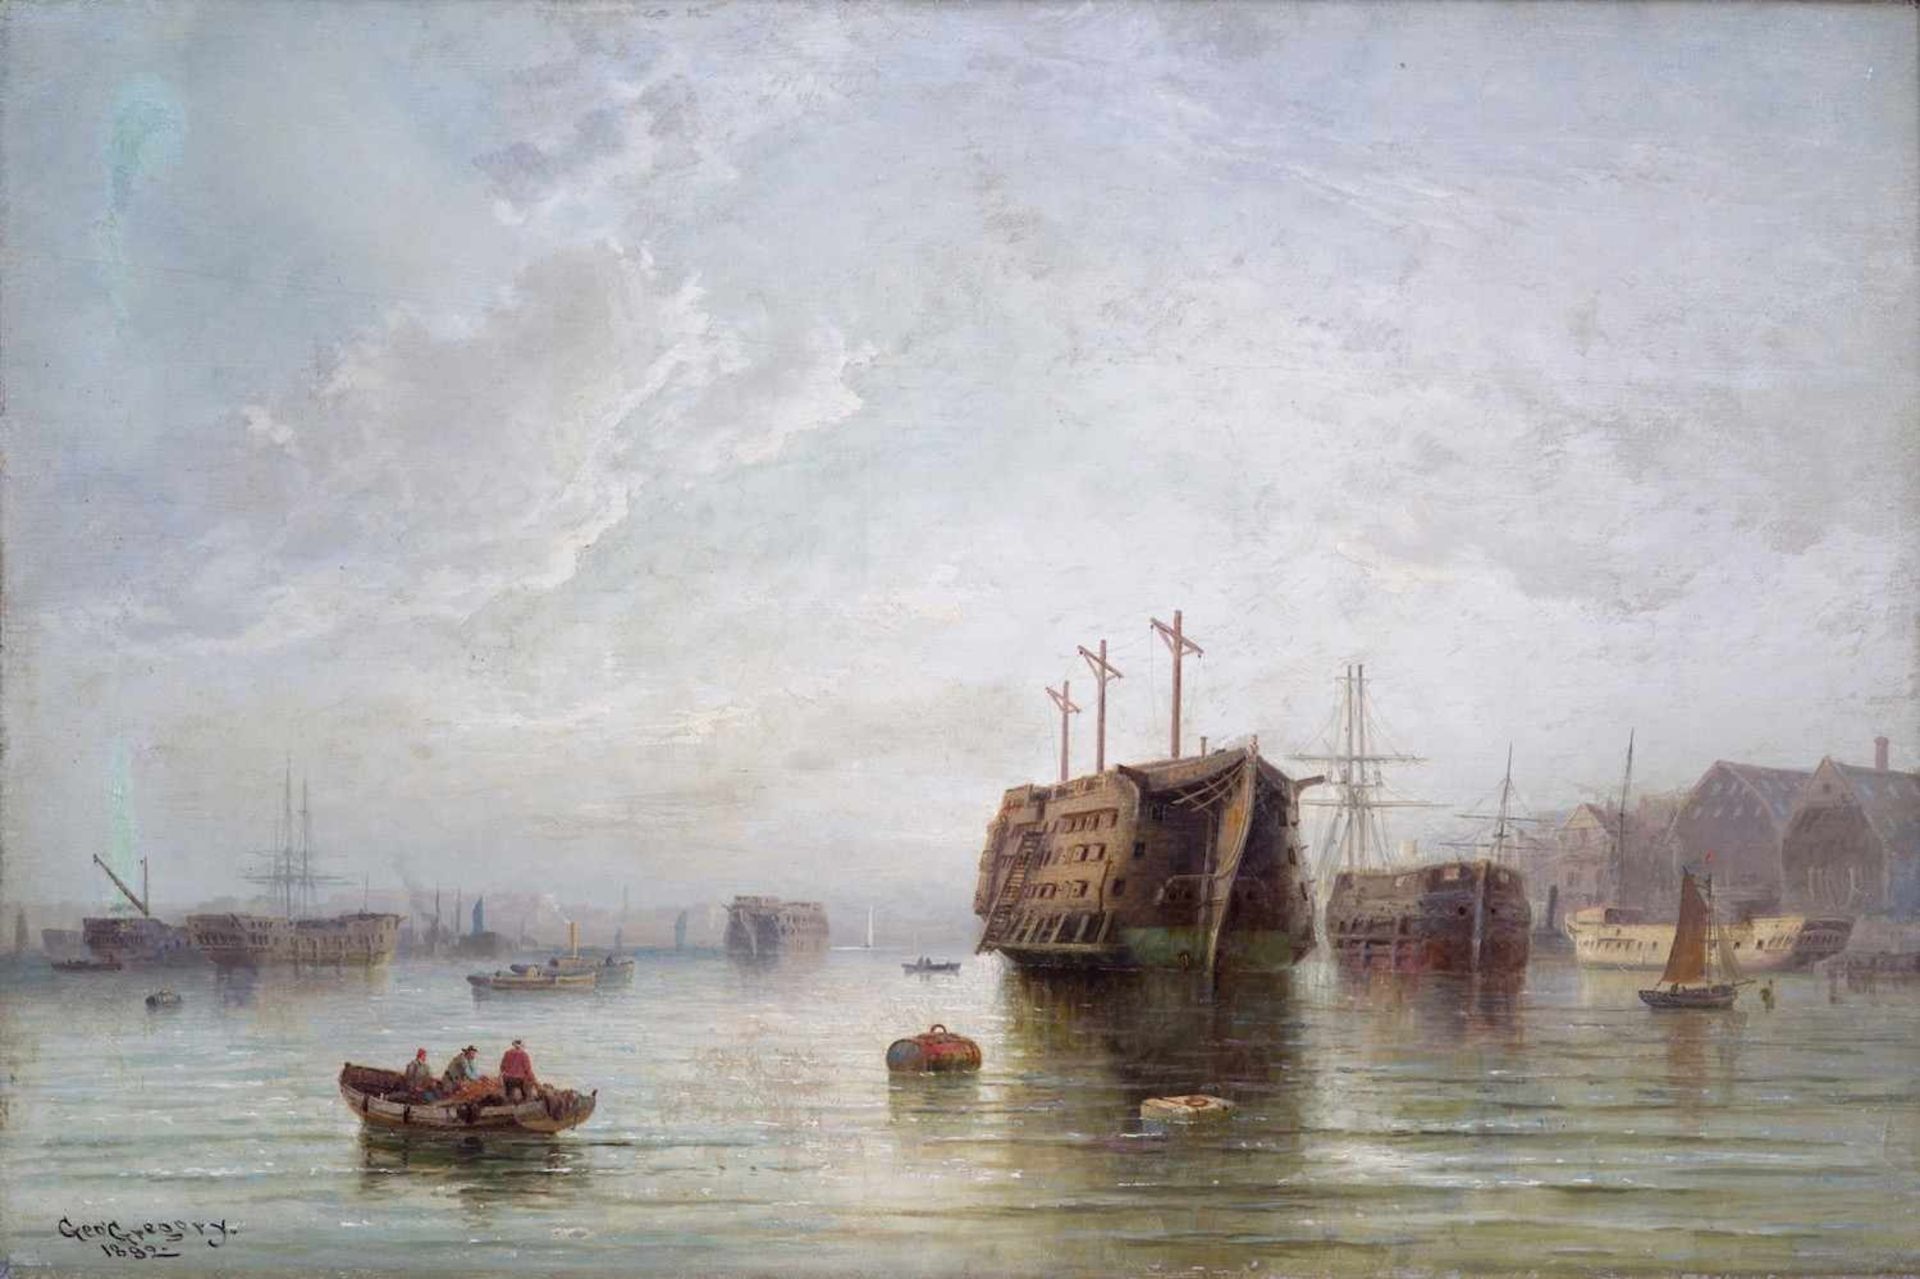 GREGORY George, Cowes 1850 - Wight 1938 [GB].Bateaux près du port, huile sur sa toile d'origine (